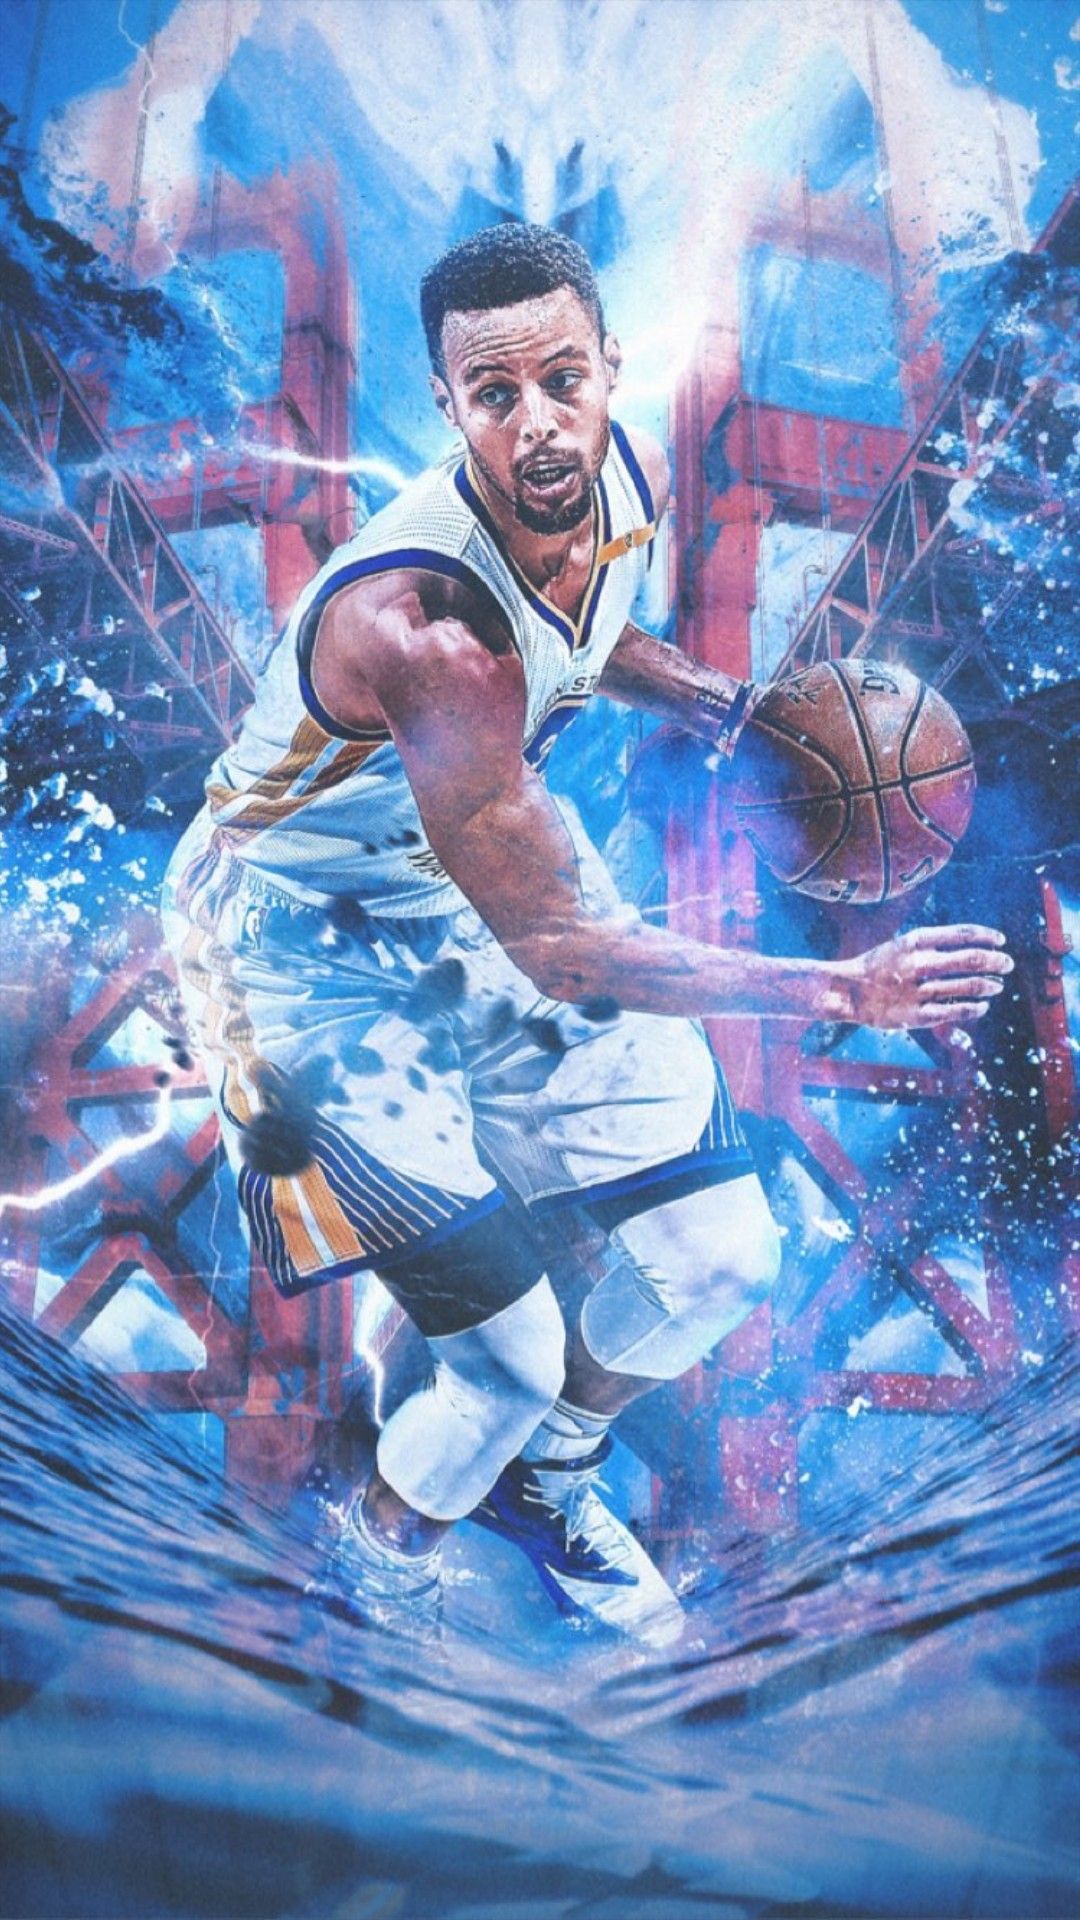 Stephen Curry wallpaper. Stephen curry wallpaper, Basketball art, Golden state warriors wallpaper